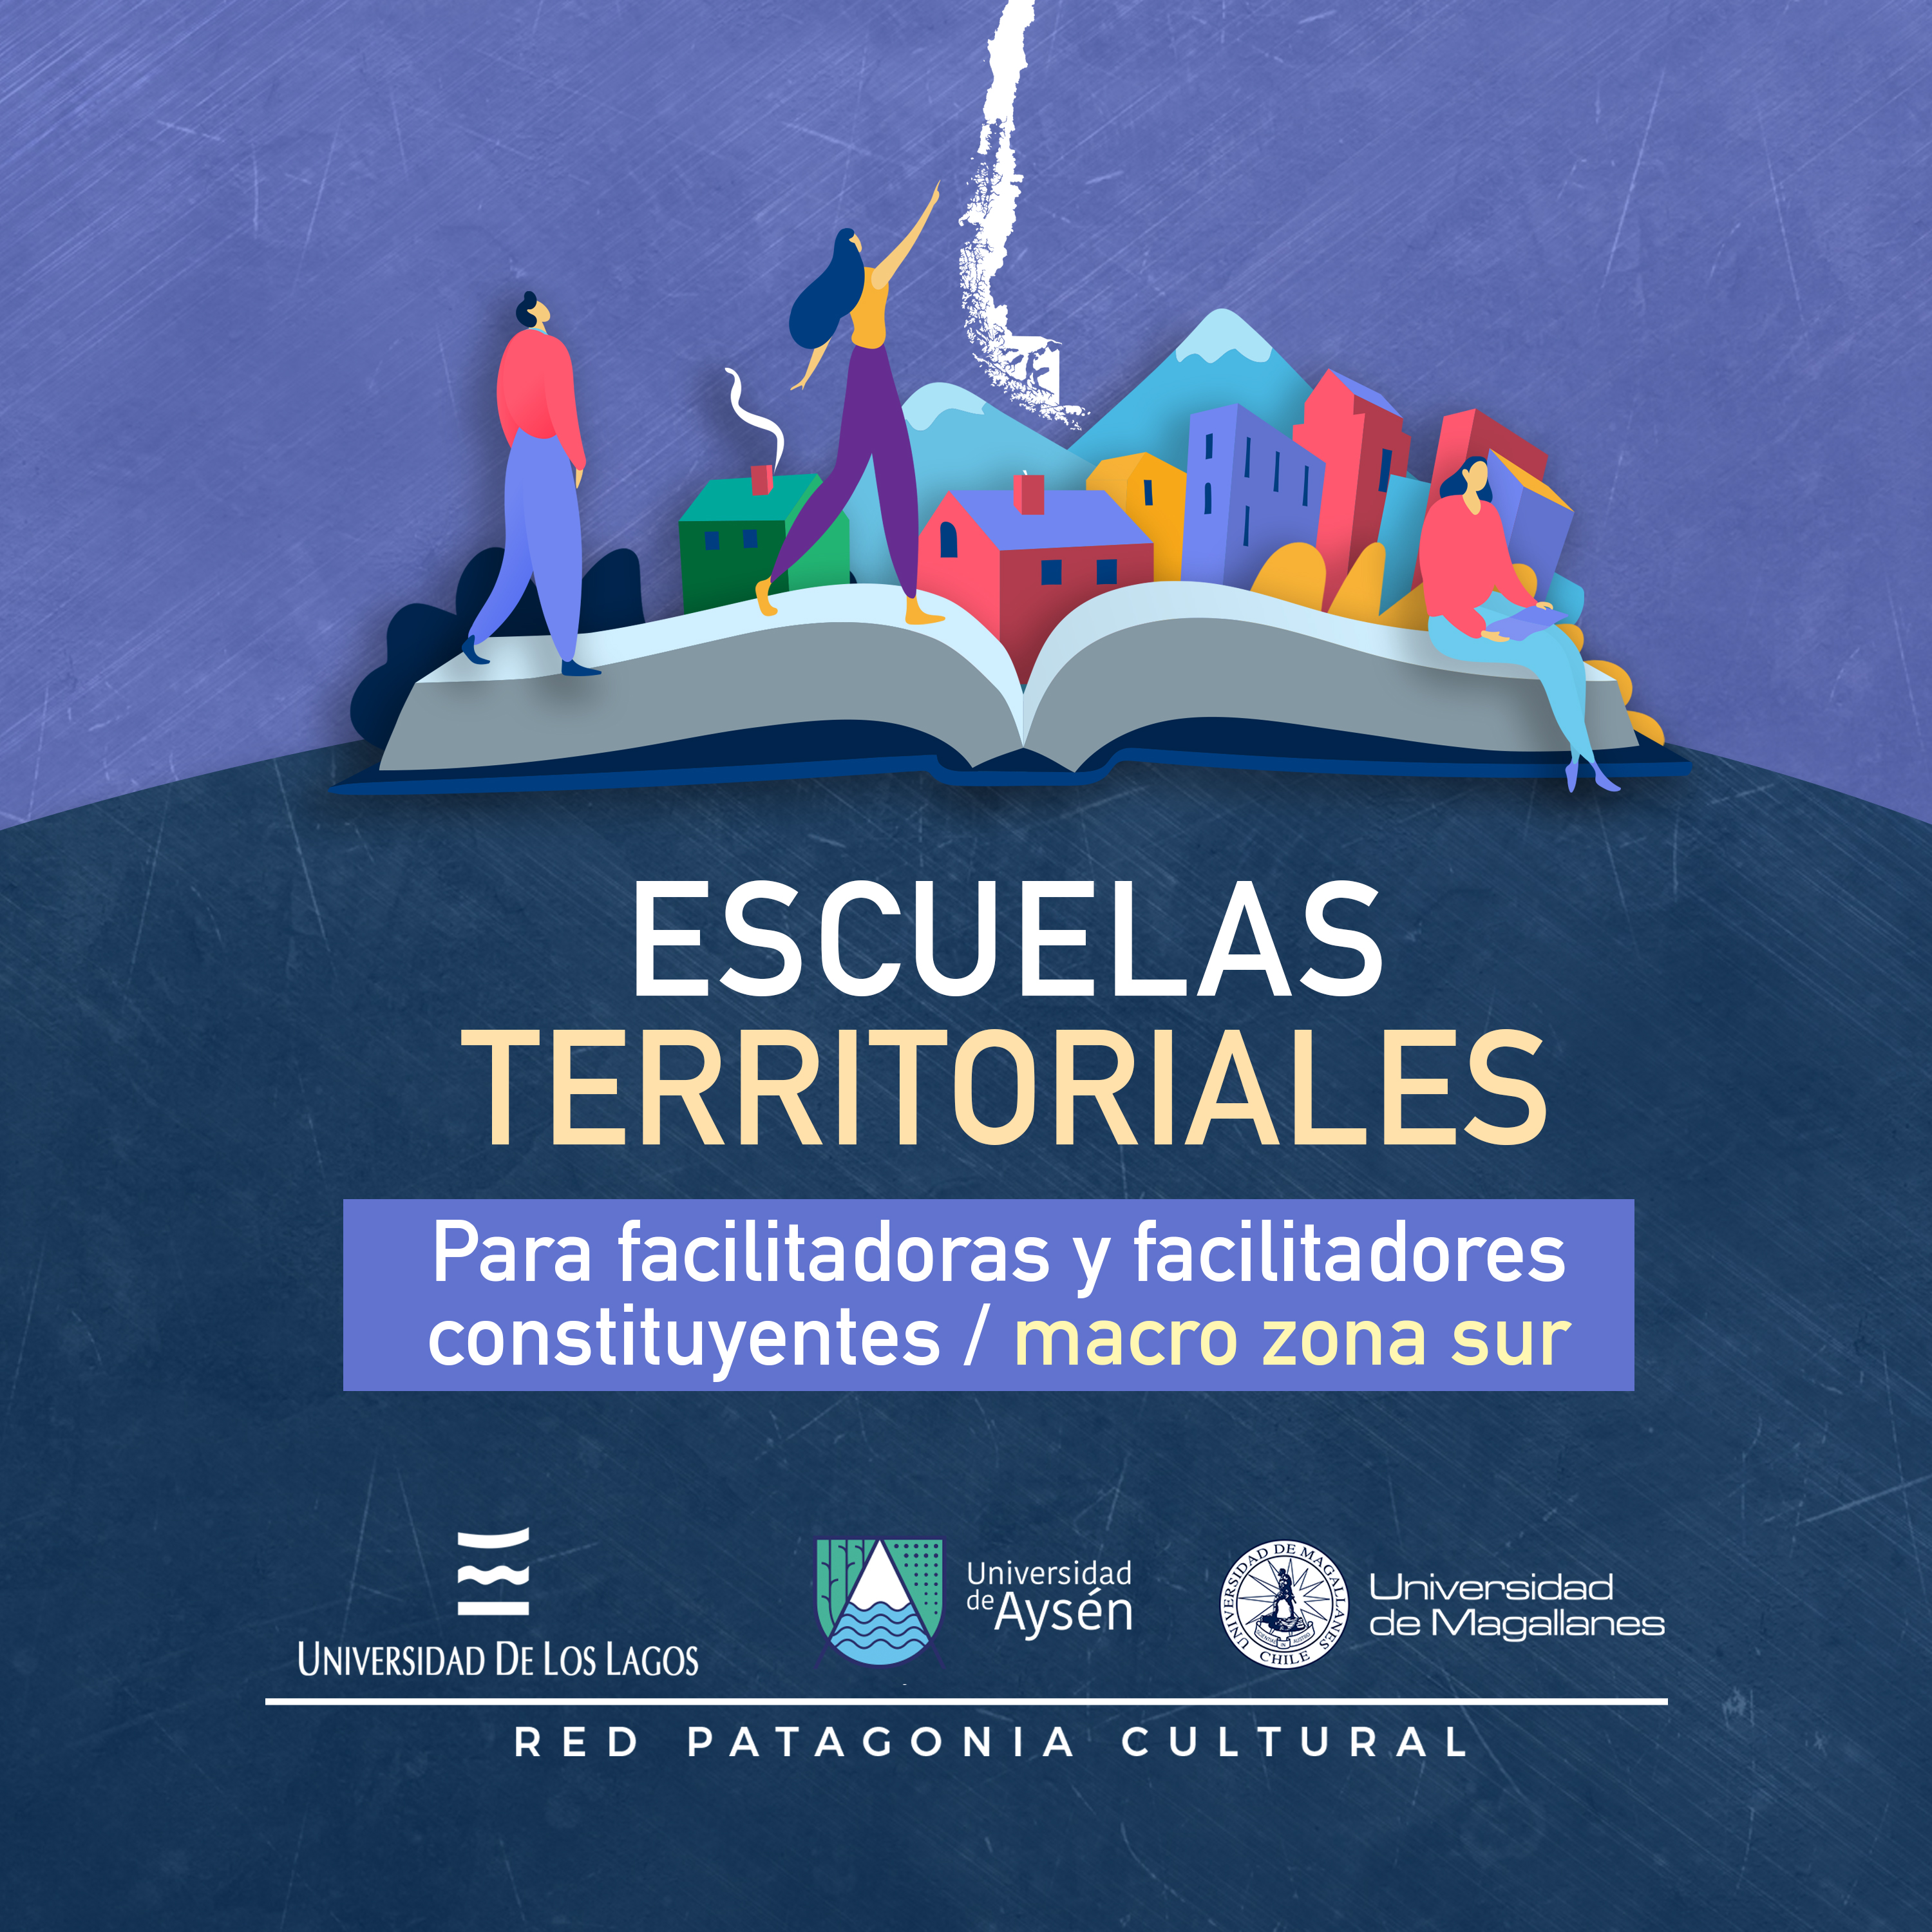 Red Patagonia Cultural aporta al proceso constituyente a través de la formación ciudadana